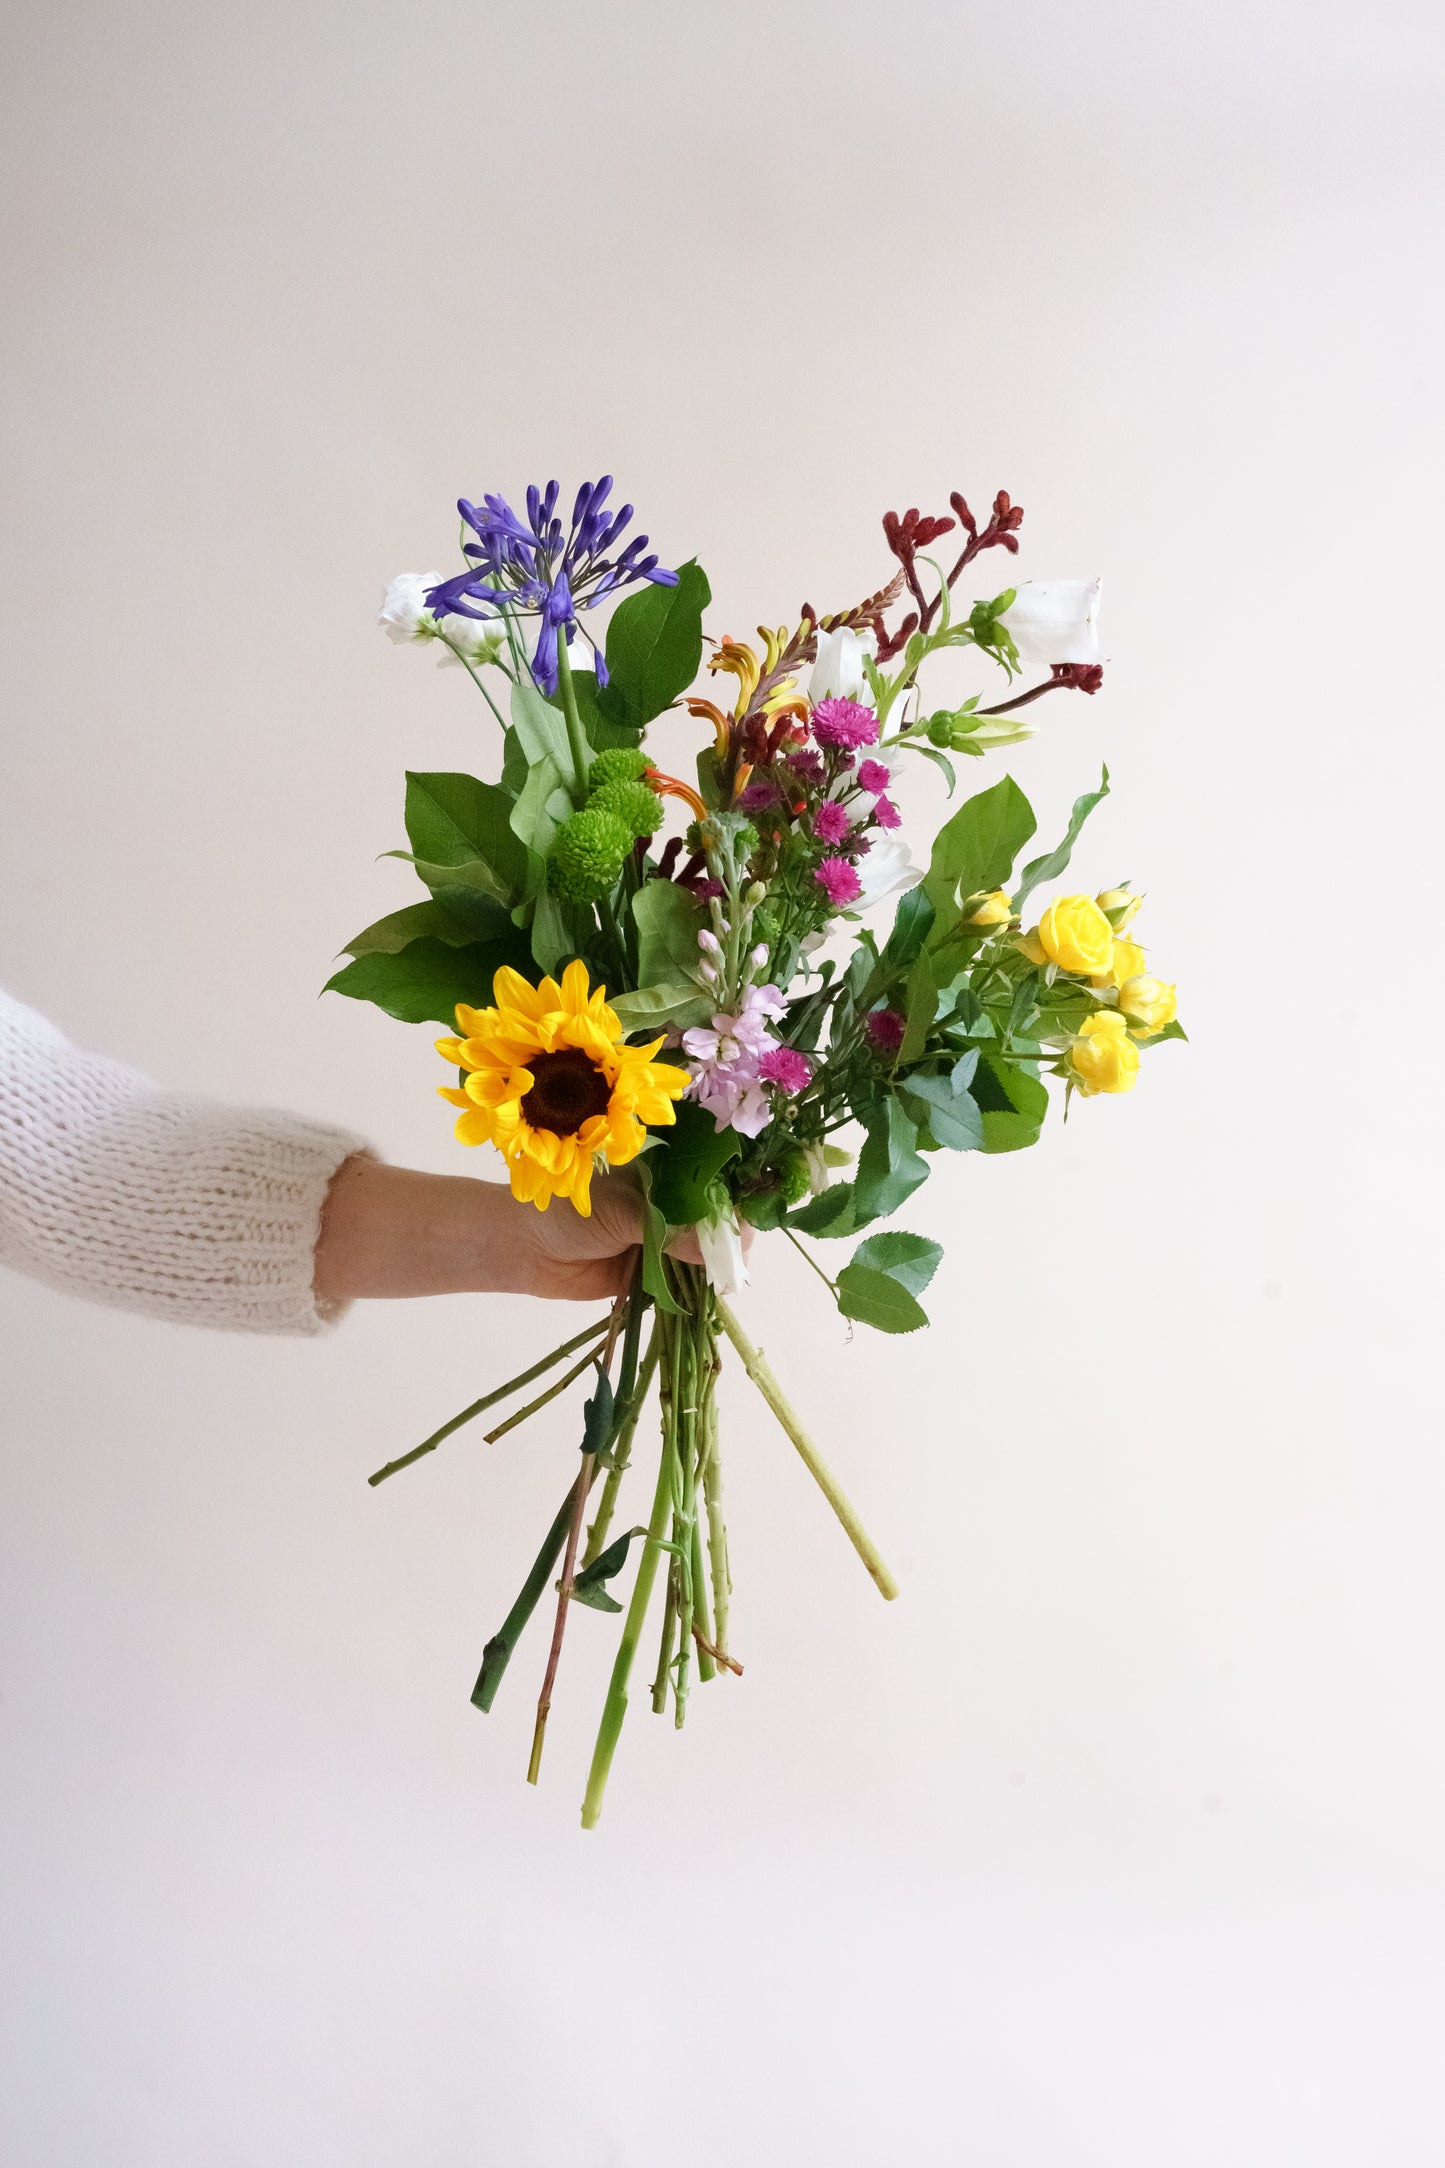 Veldboeket laten bezorgen? Bij ons kun je gemakkelijk online bloemen bestellen met plukverse bloemen van de teler! 